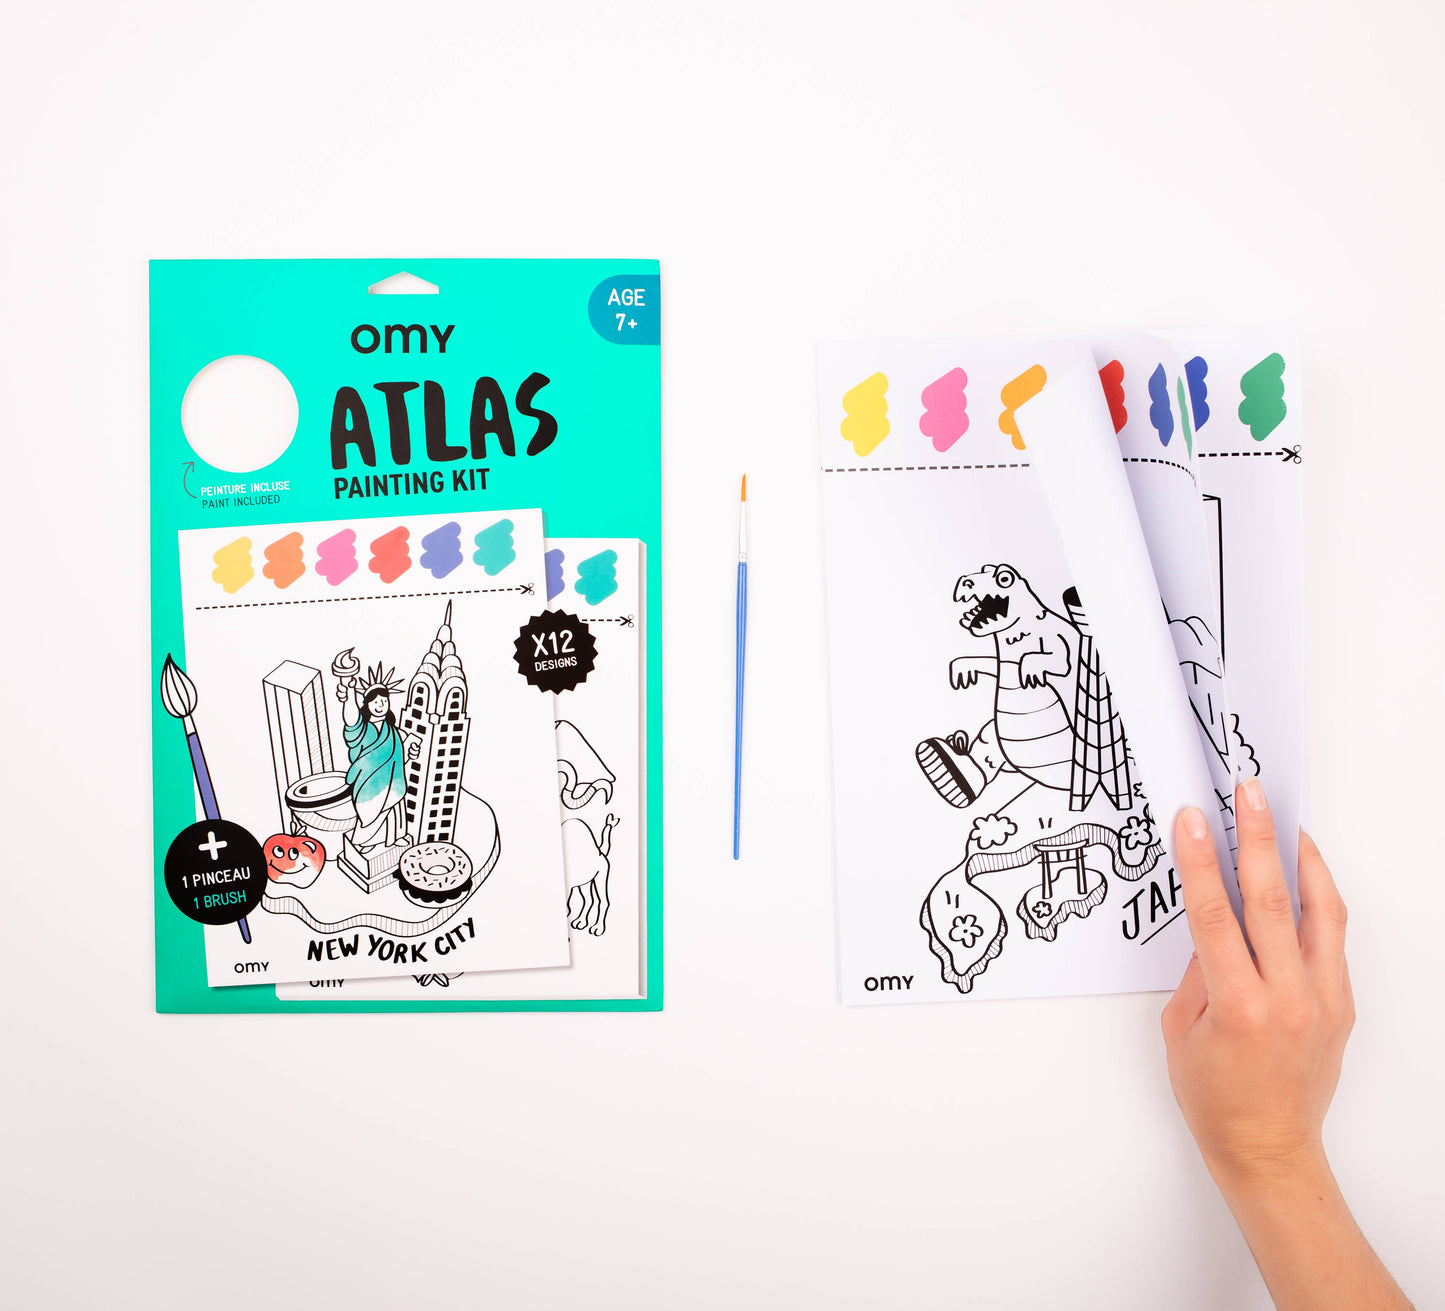 Atlas Painting Kit